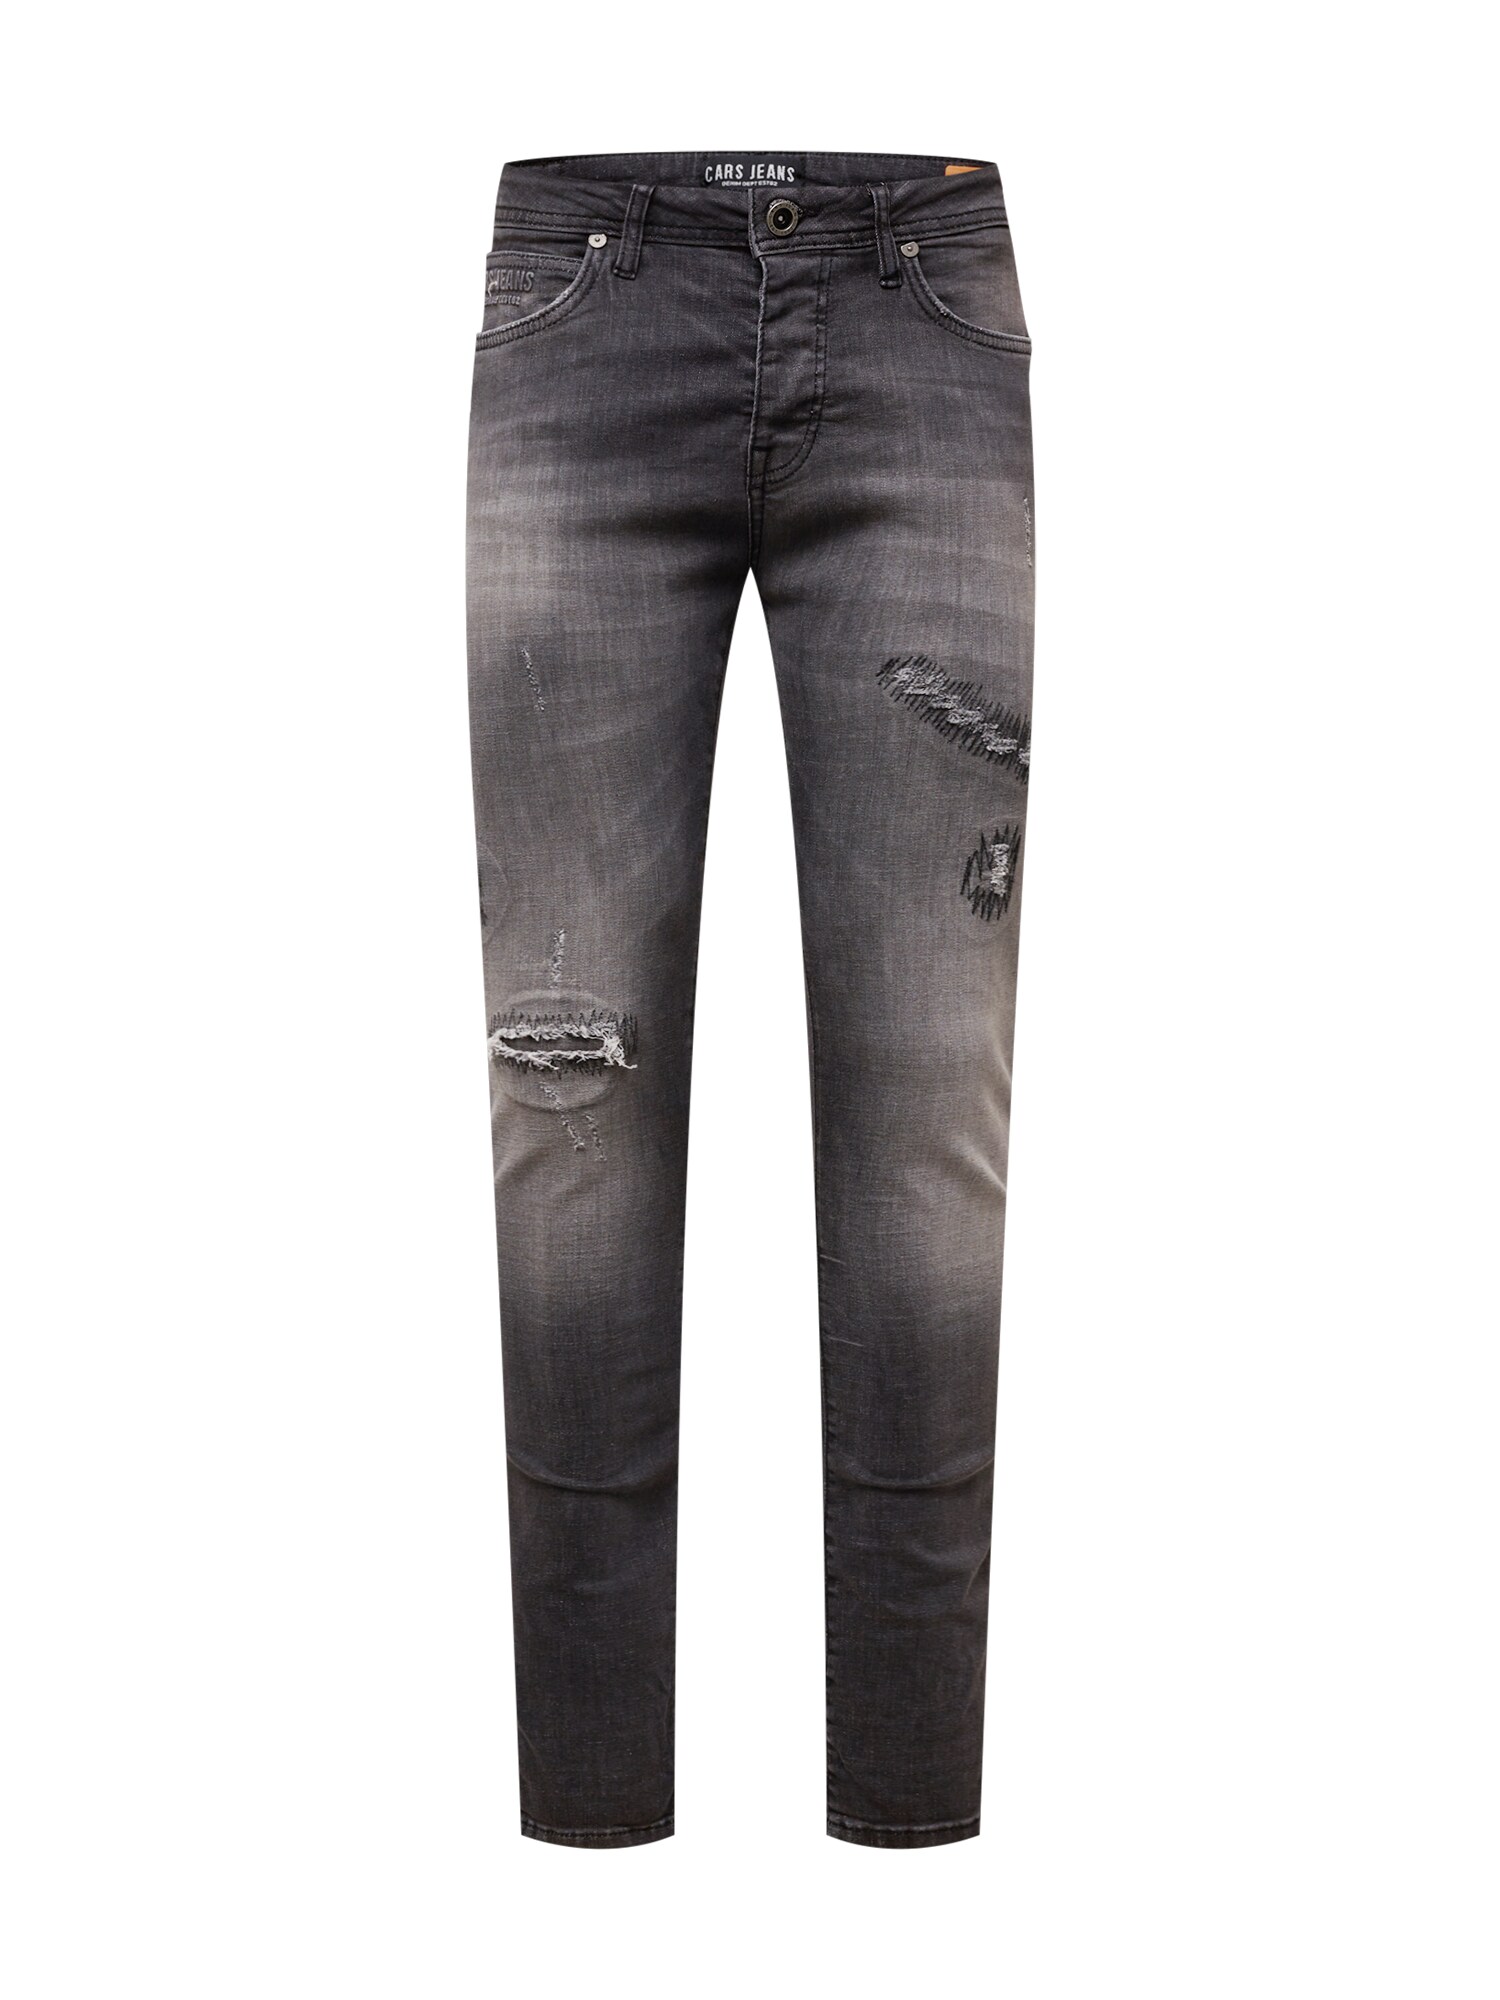 Cars Jeans Džinsai 'ARON' juodo džinso spalva